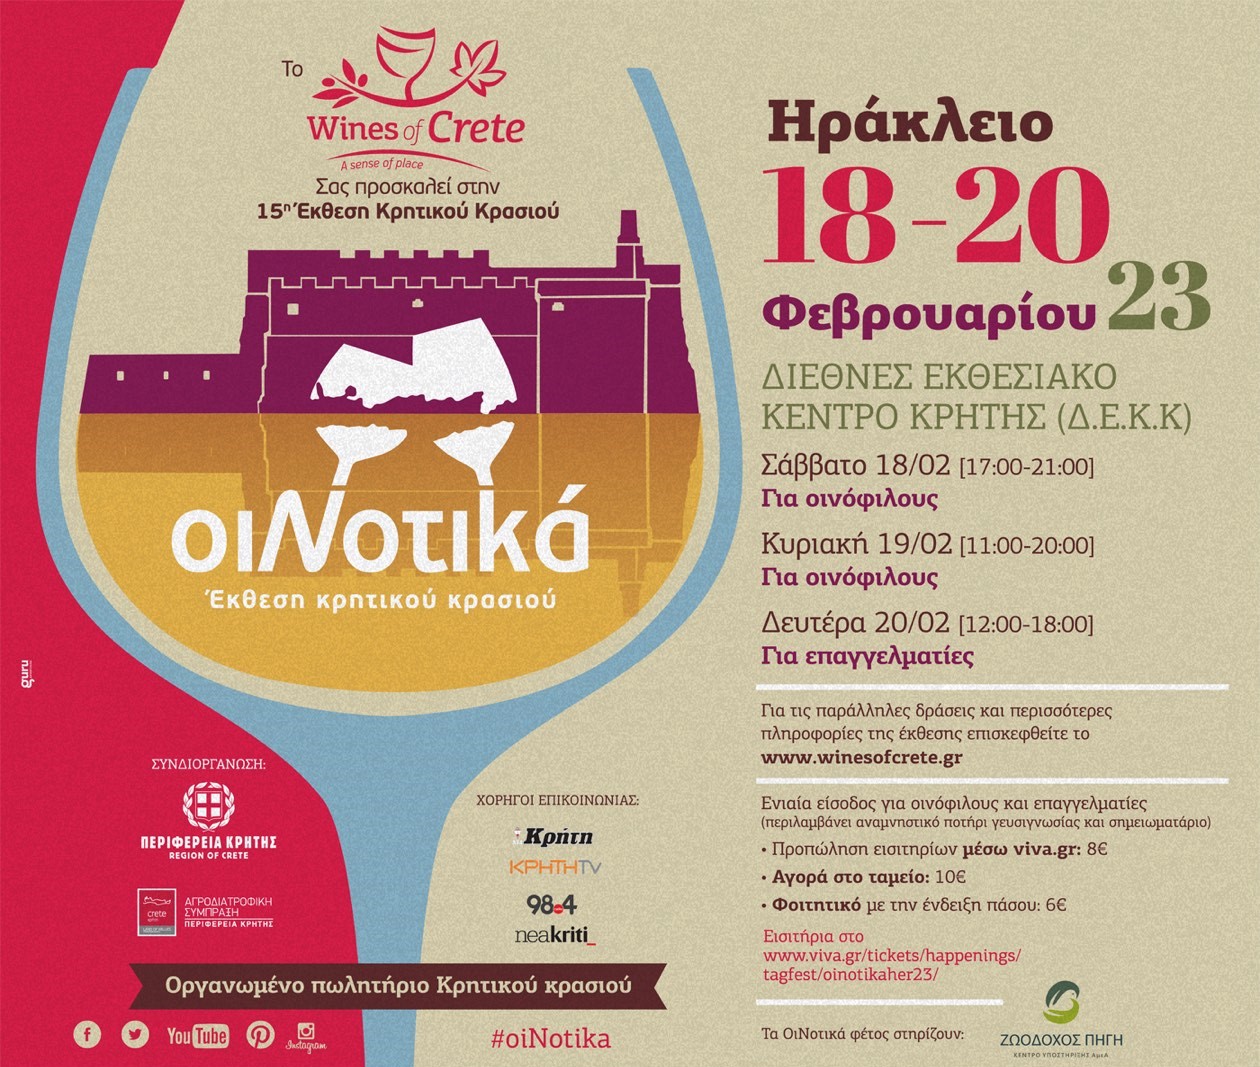 Ηράκλειο: Η έκθεση κρητικού κρασιού “ΟιΝοτικά” έρχεται στο ΔΕΚΚ στις 18-20 Φεβρουαρίου